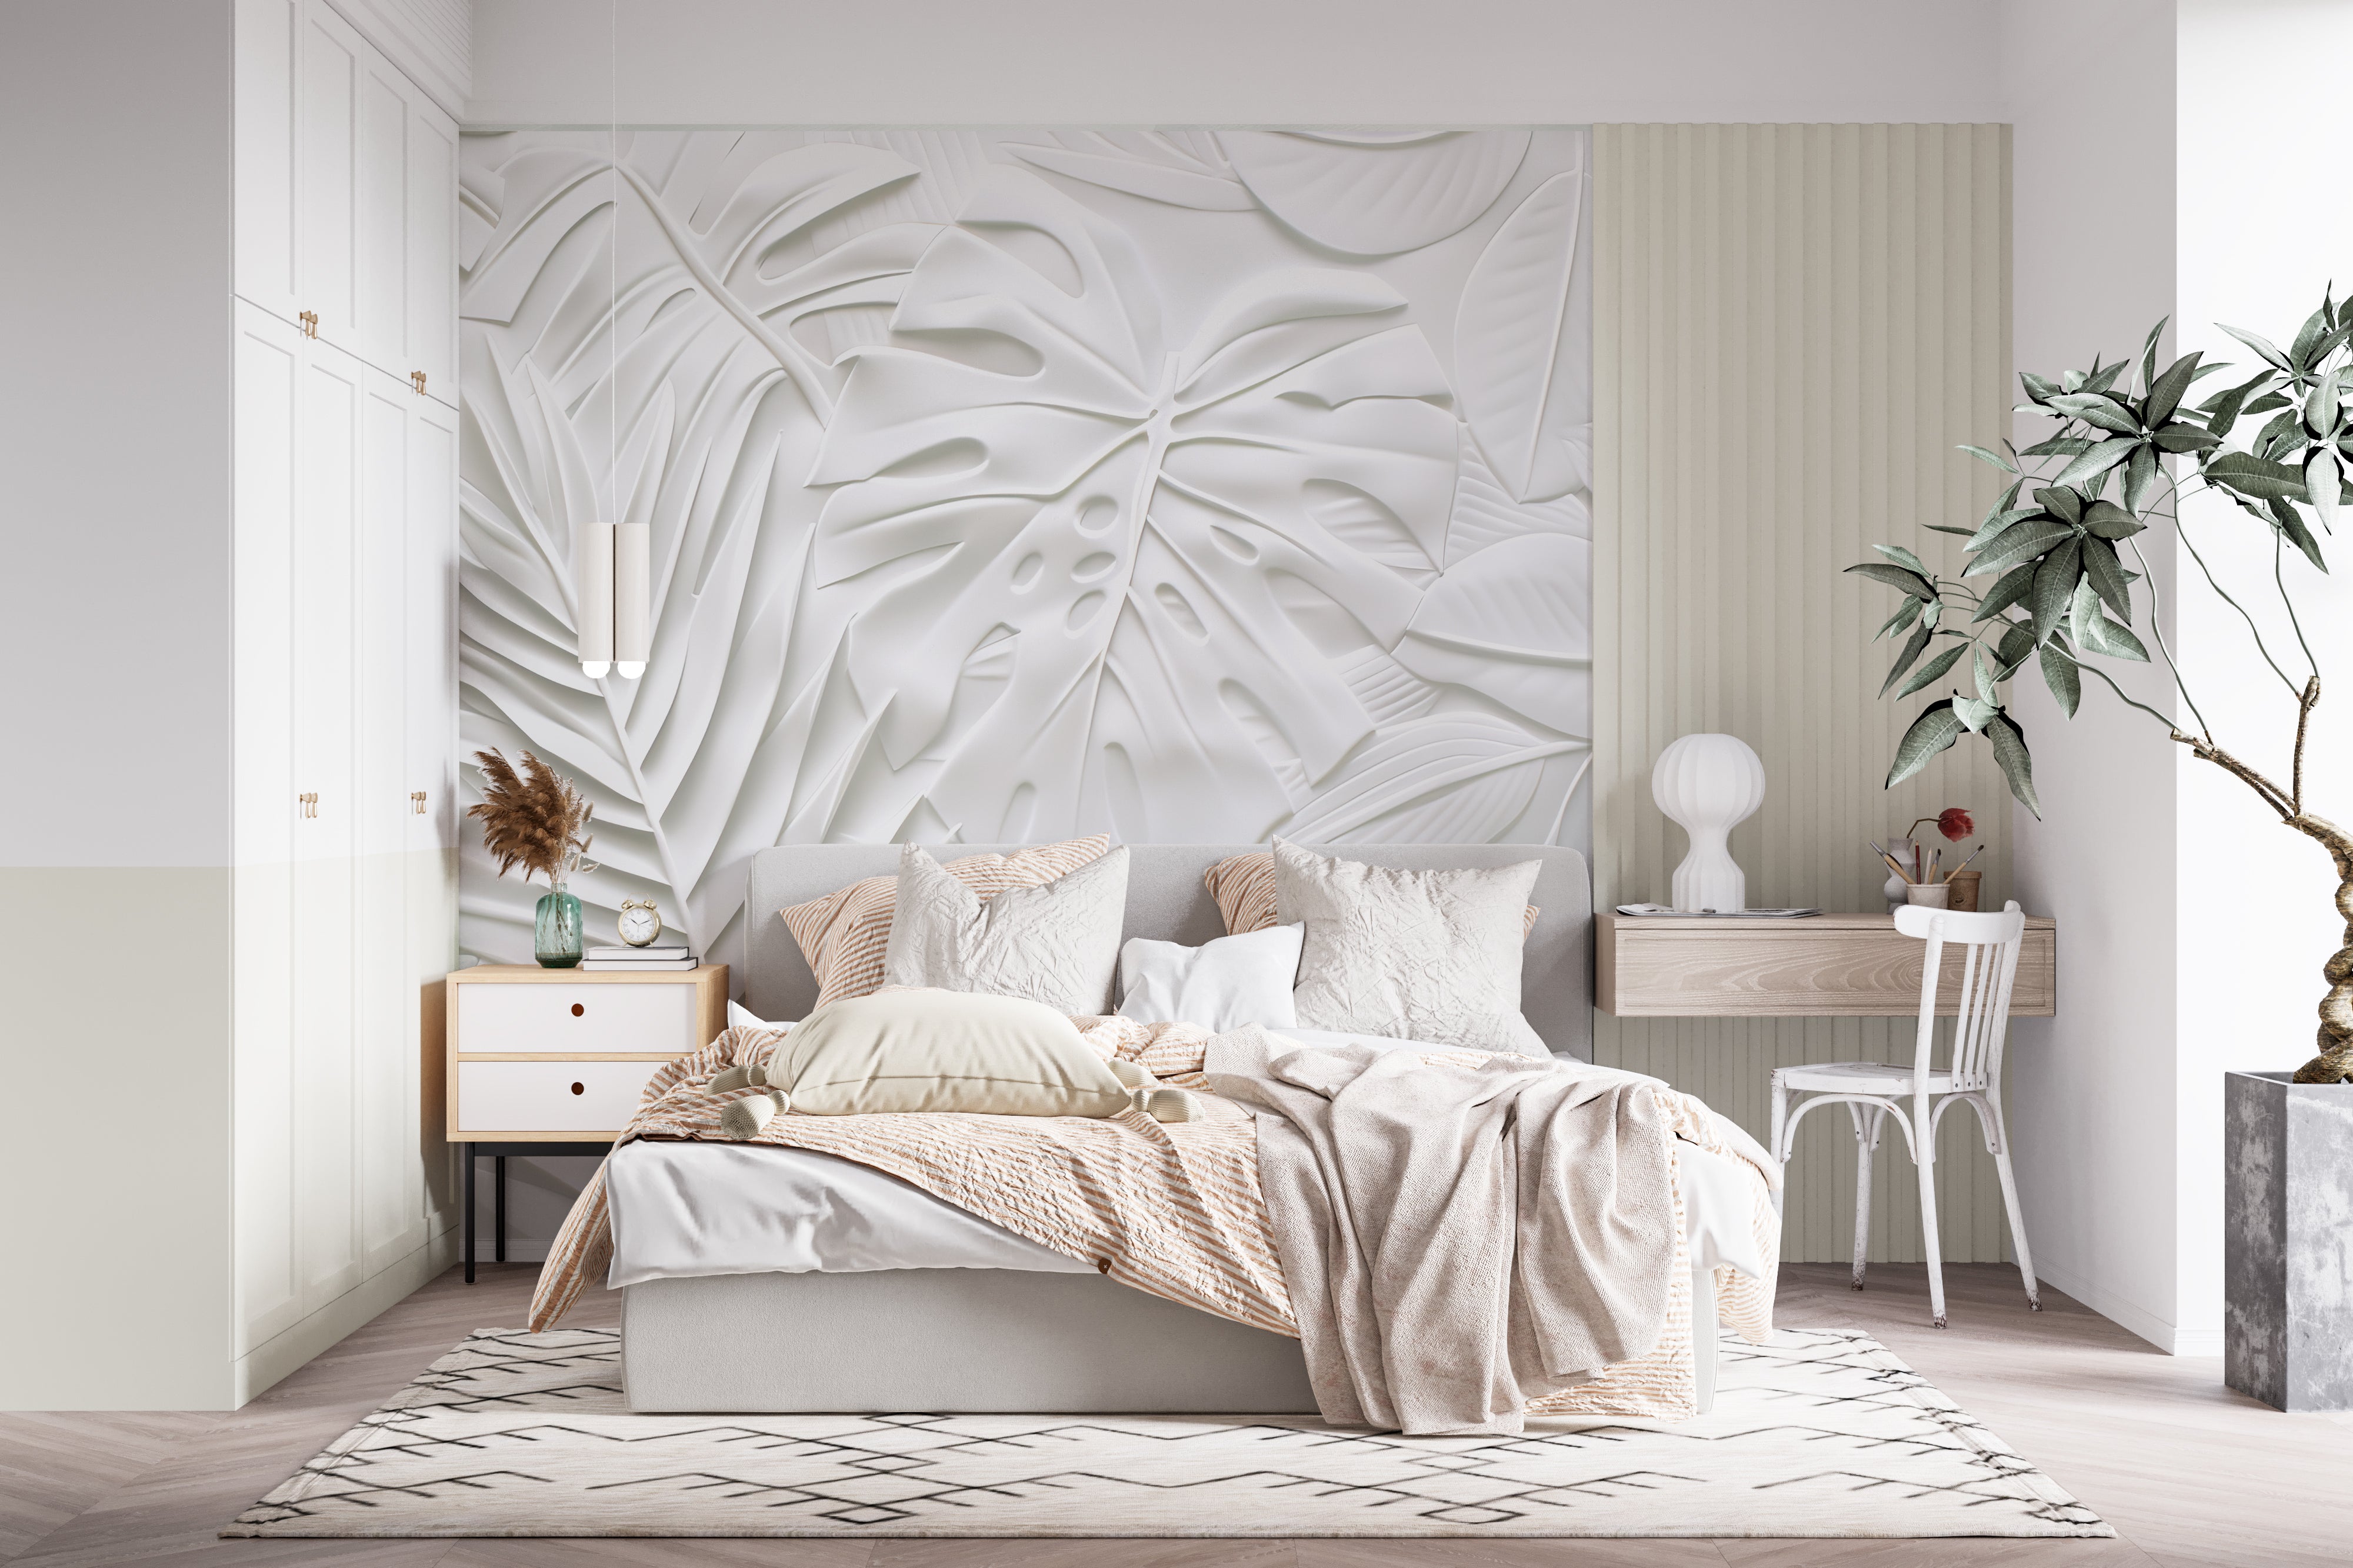 Feuillage 3D Blanc – Décor Mural Texturé